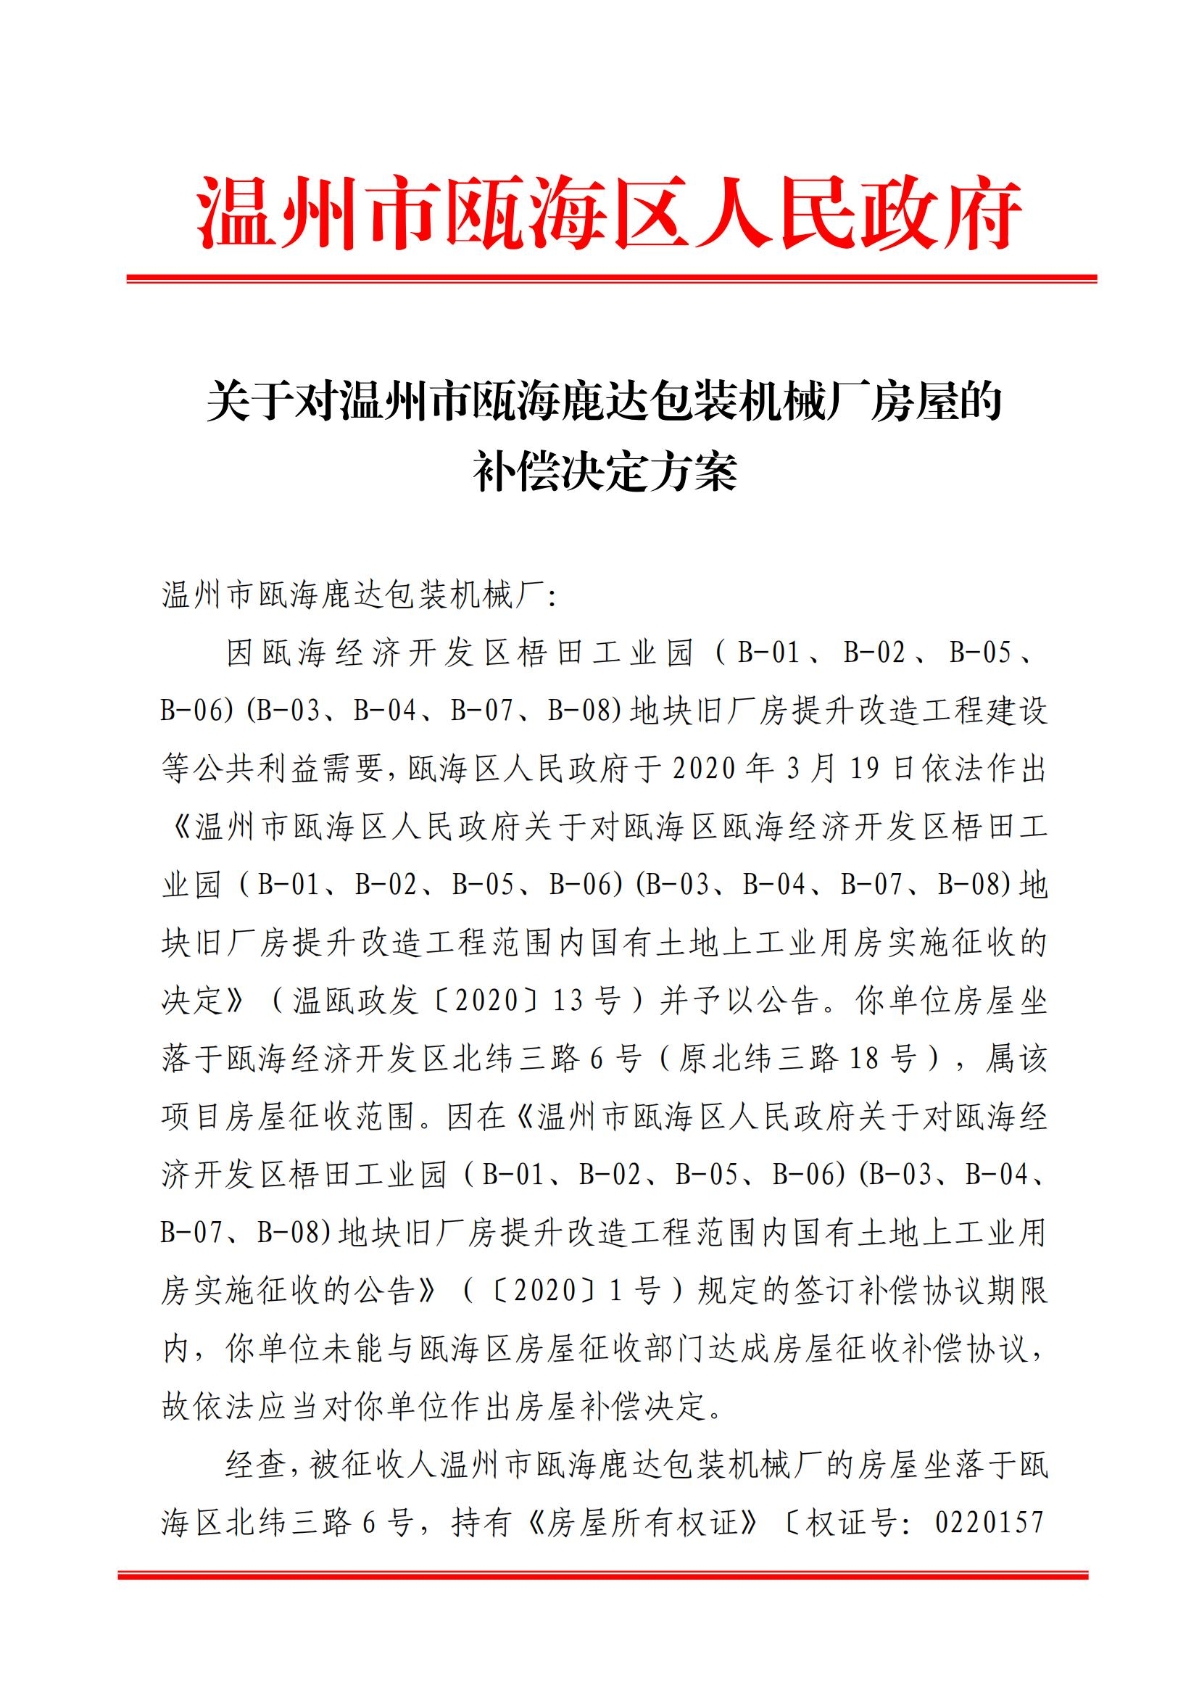 关于对温州市瓯海鹿达包装机械厂房屋的补偿决定方案_00.jpg